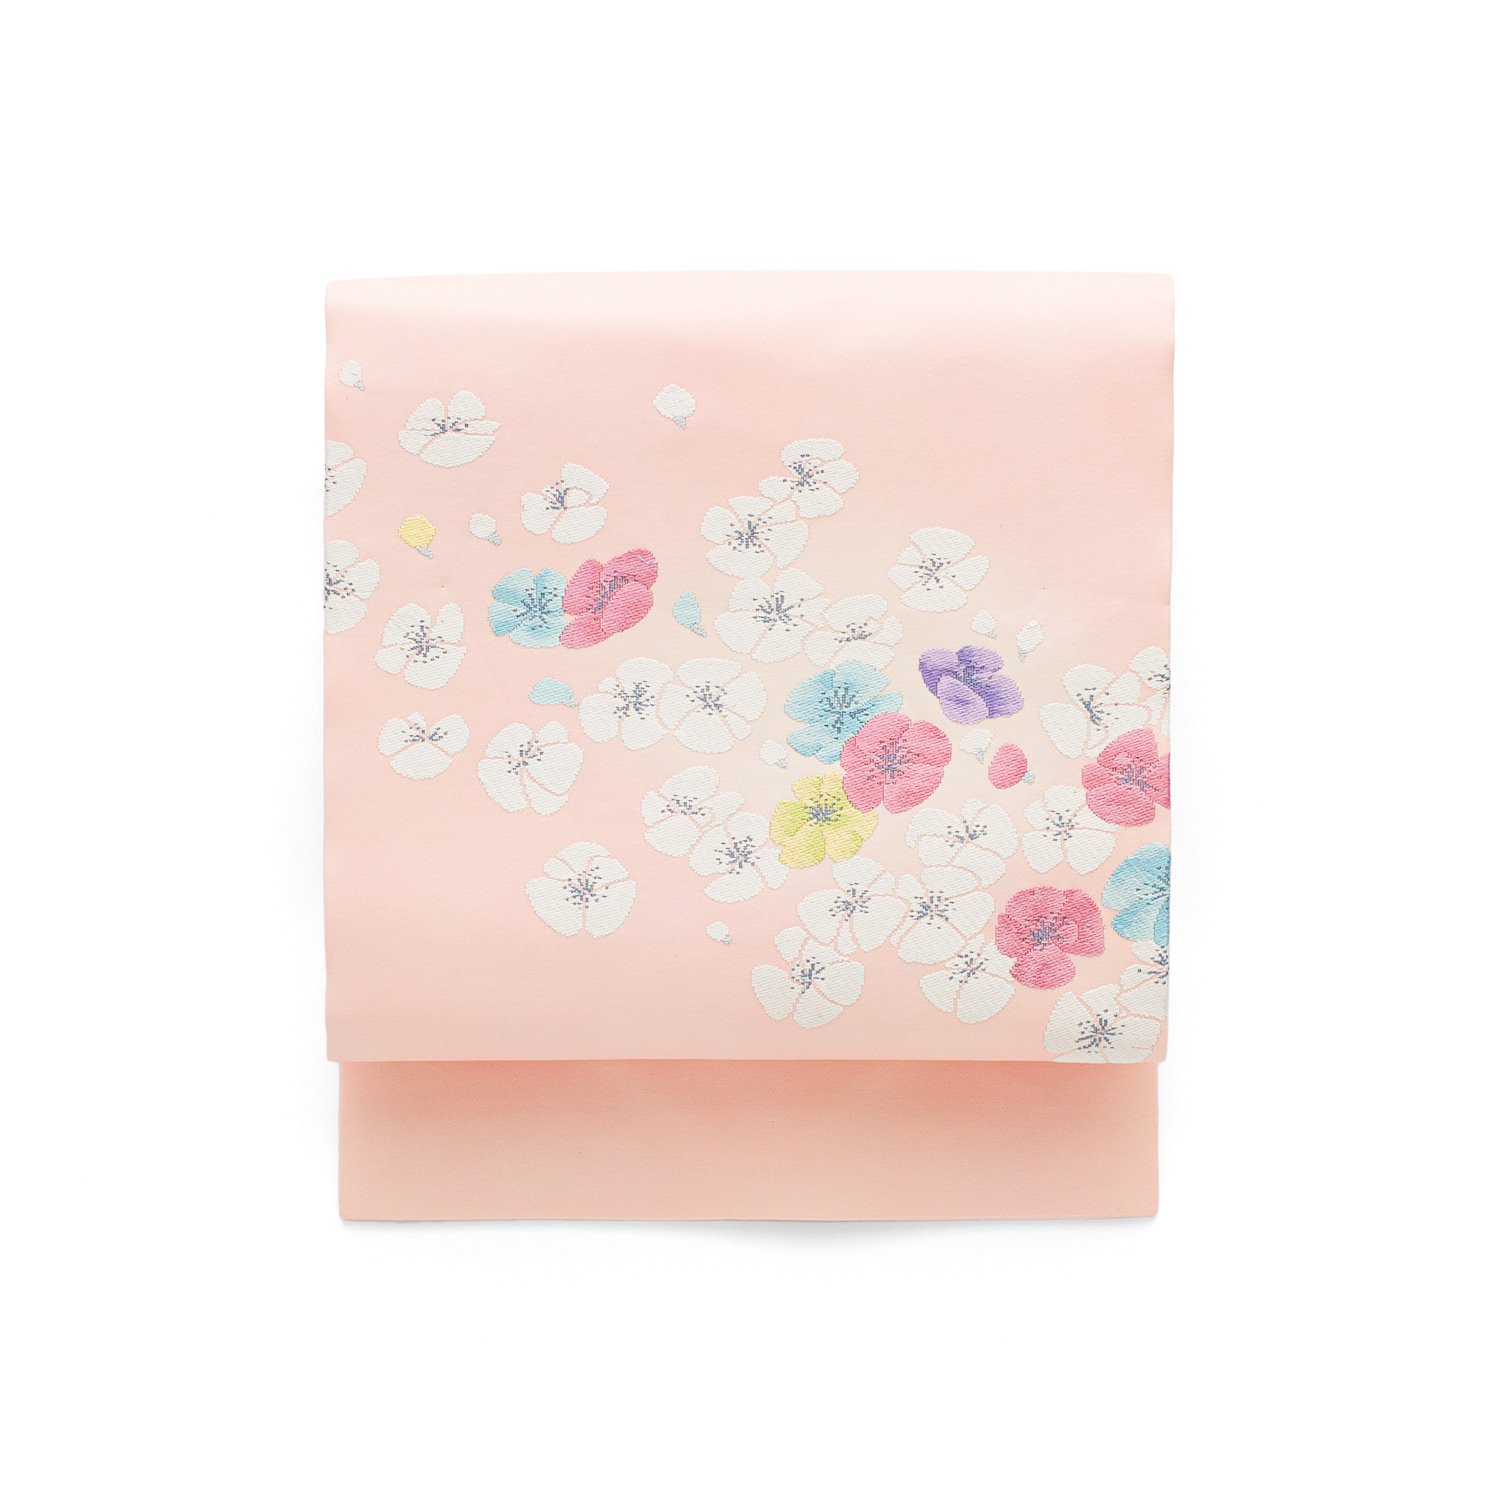 「淡いピンクに花模様」の商品画像